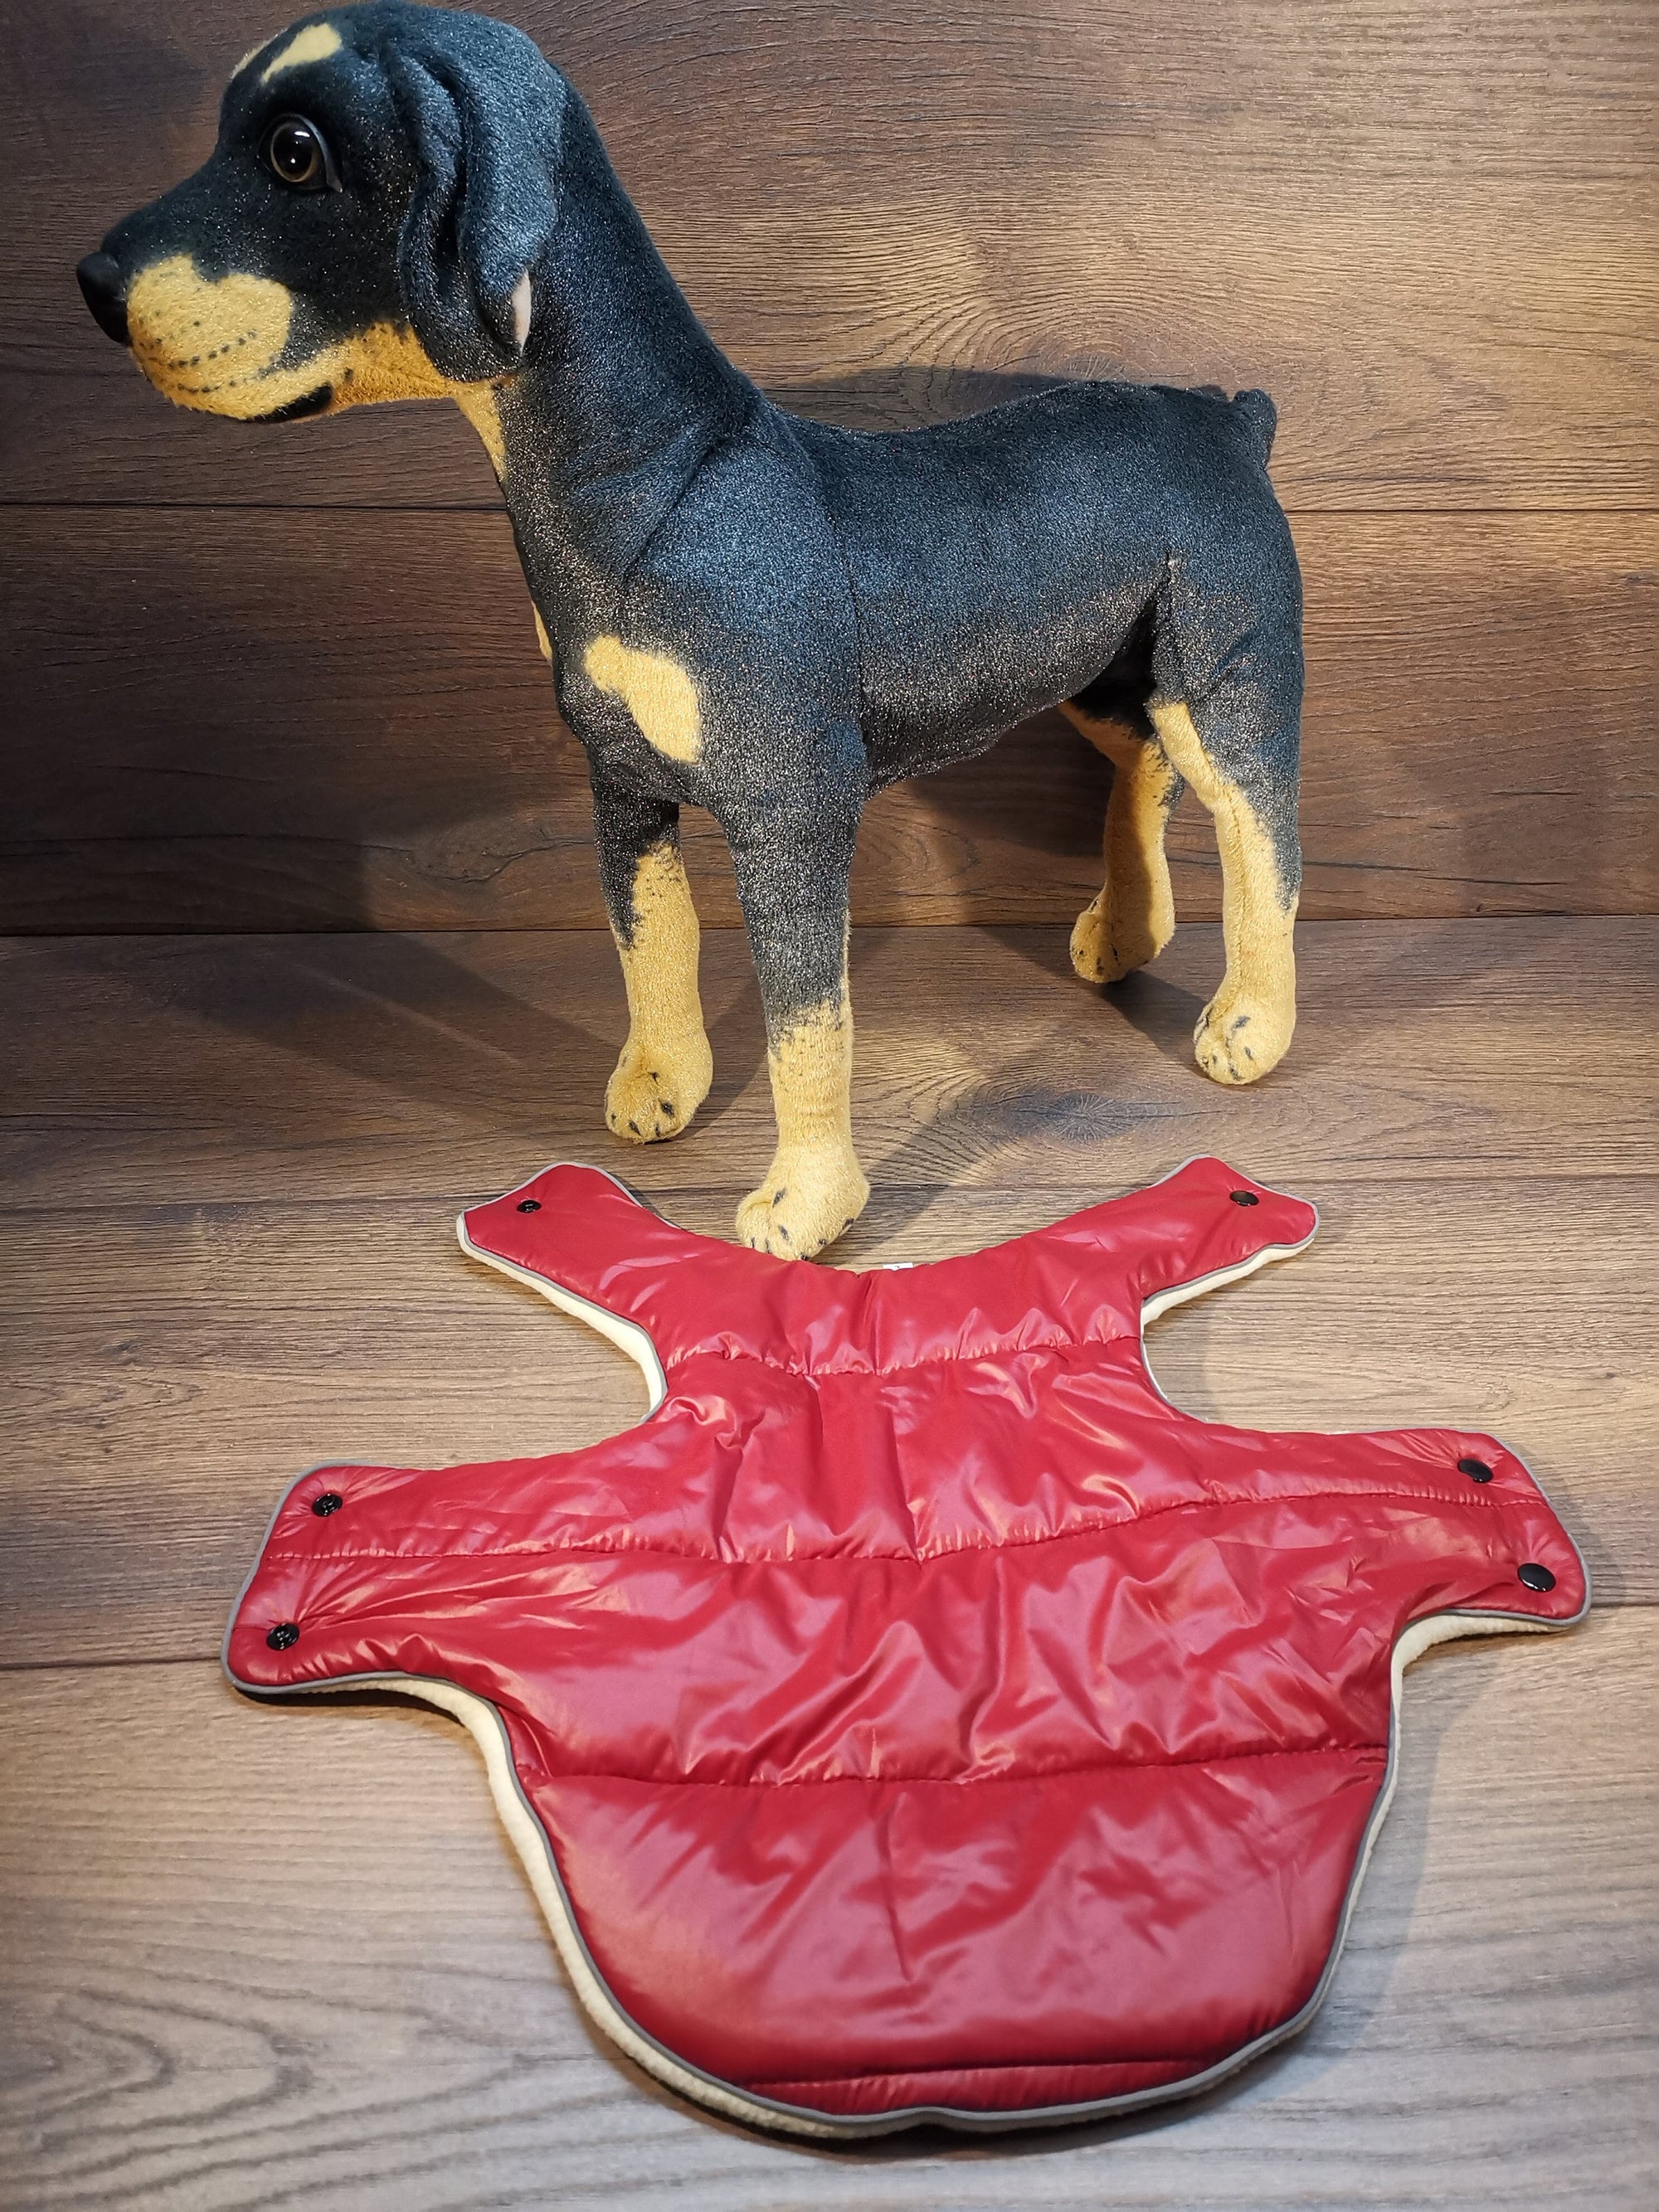 Hundemantel in Rot mit Fleece Druckknöpfen, Hundemantel mit Namen, Hundemantel für große Hunde, Hundemantel Winter, Hundemantel mit Geschirr